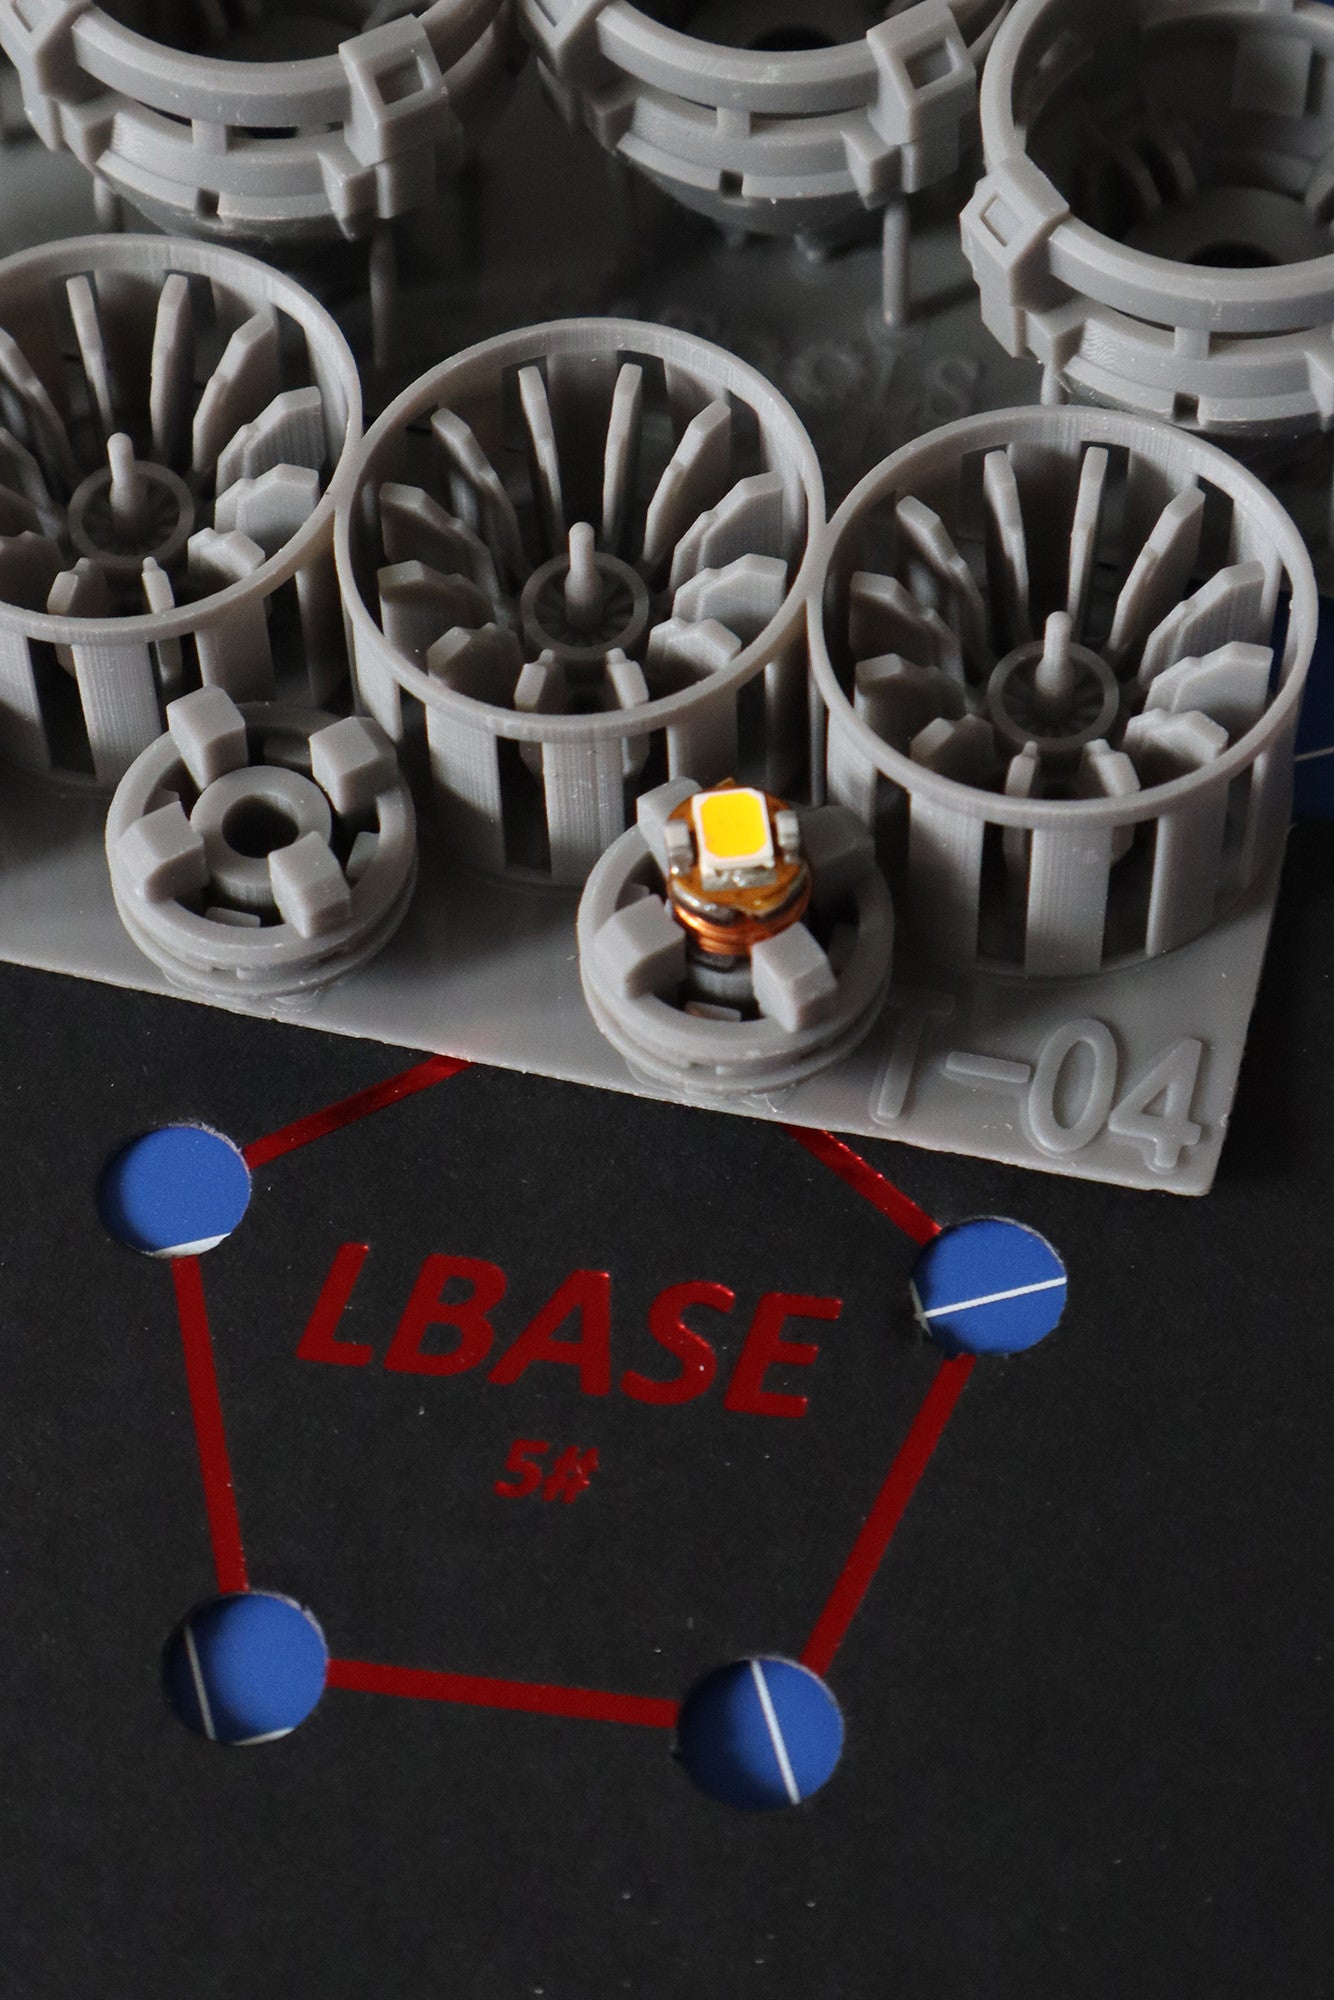 Hobbymate Luminous Thruster for Lbase magnetic LED